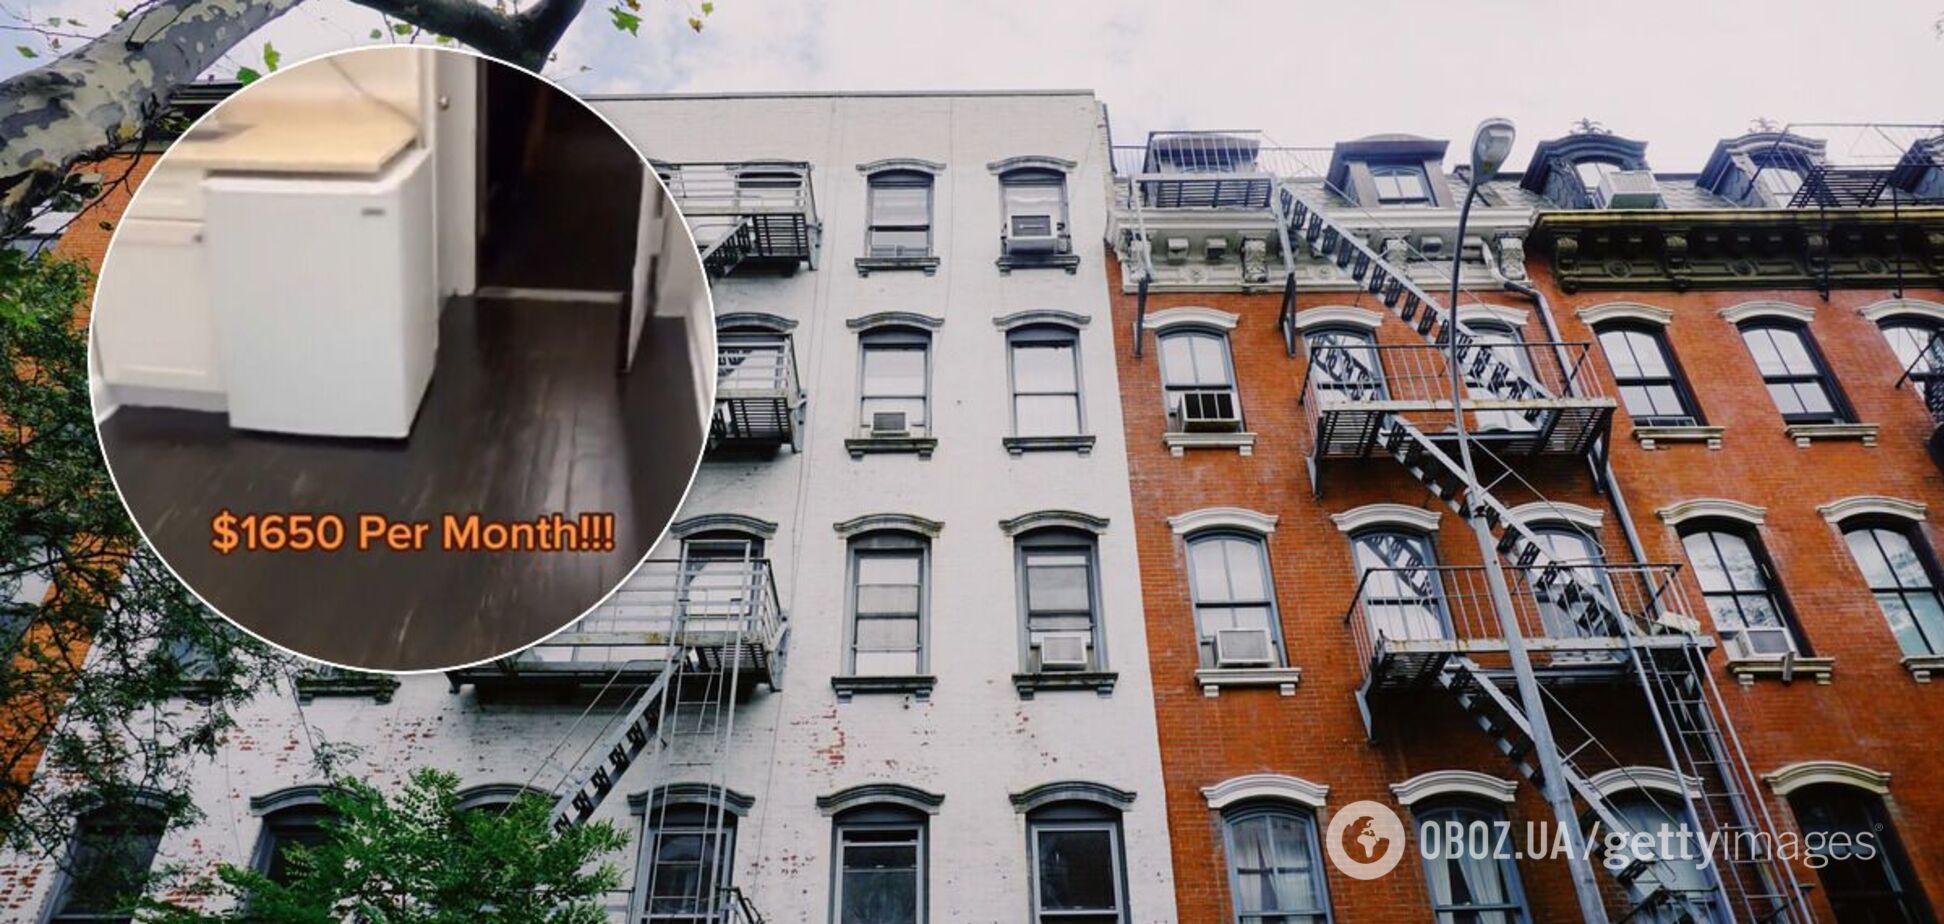 Ріелтор показав 'найгіршу' квартиру в світі за $1,65 тис. Відео